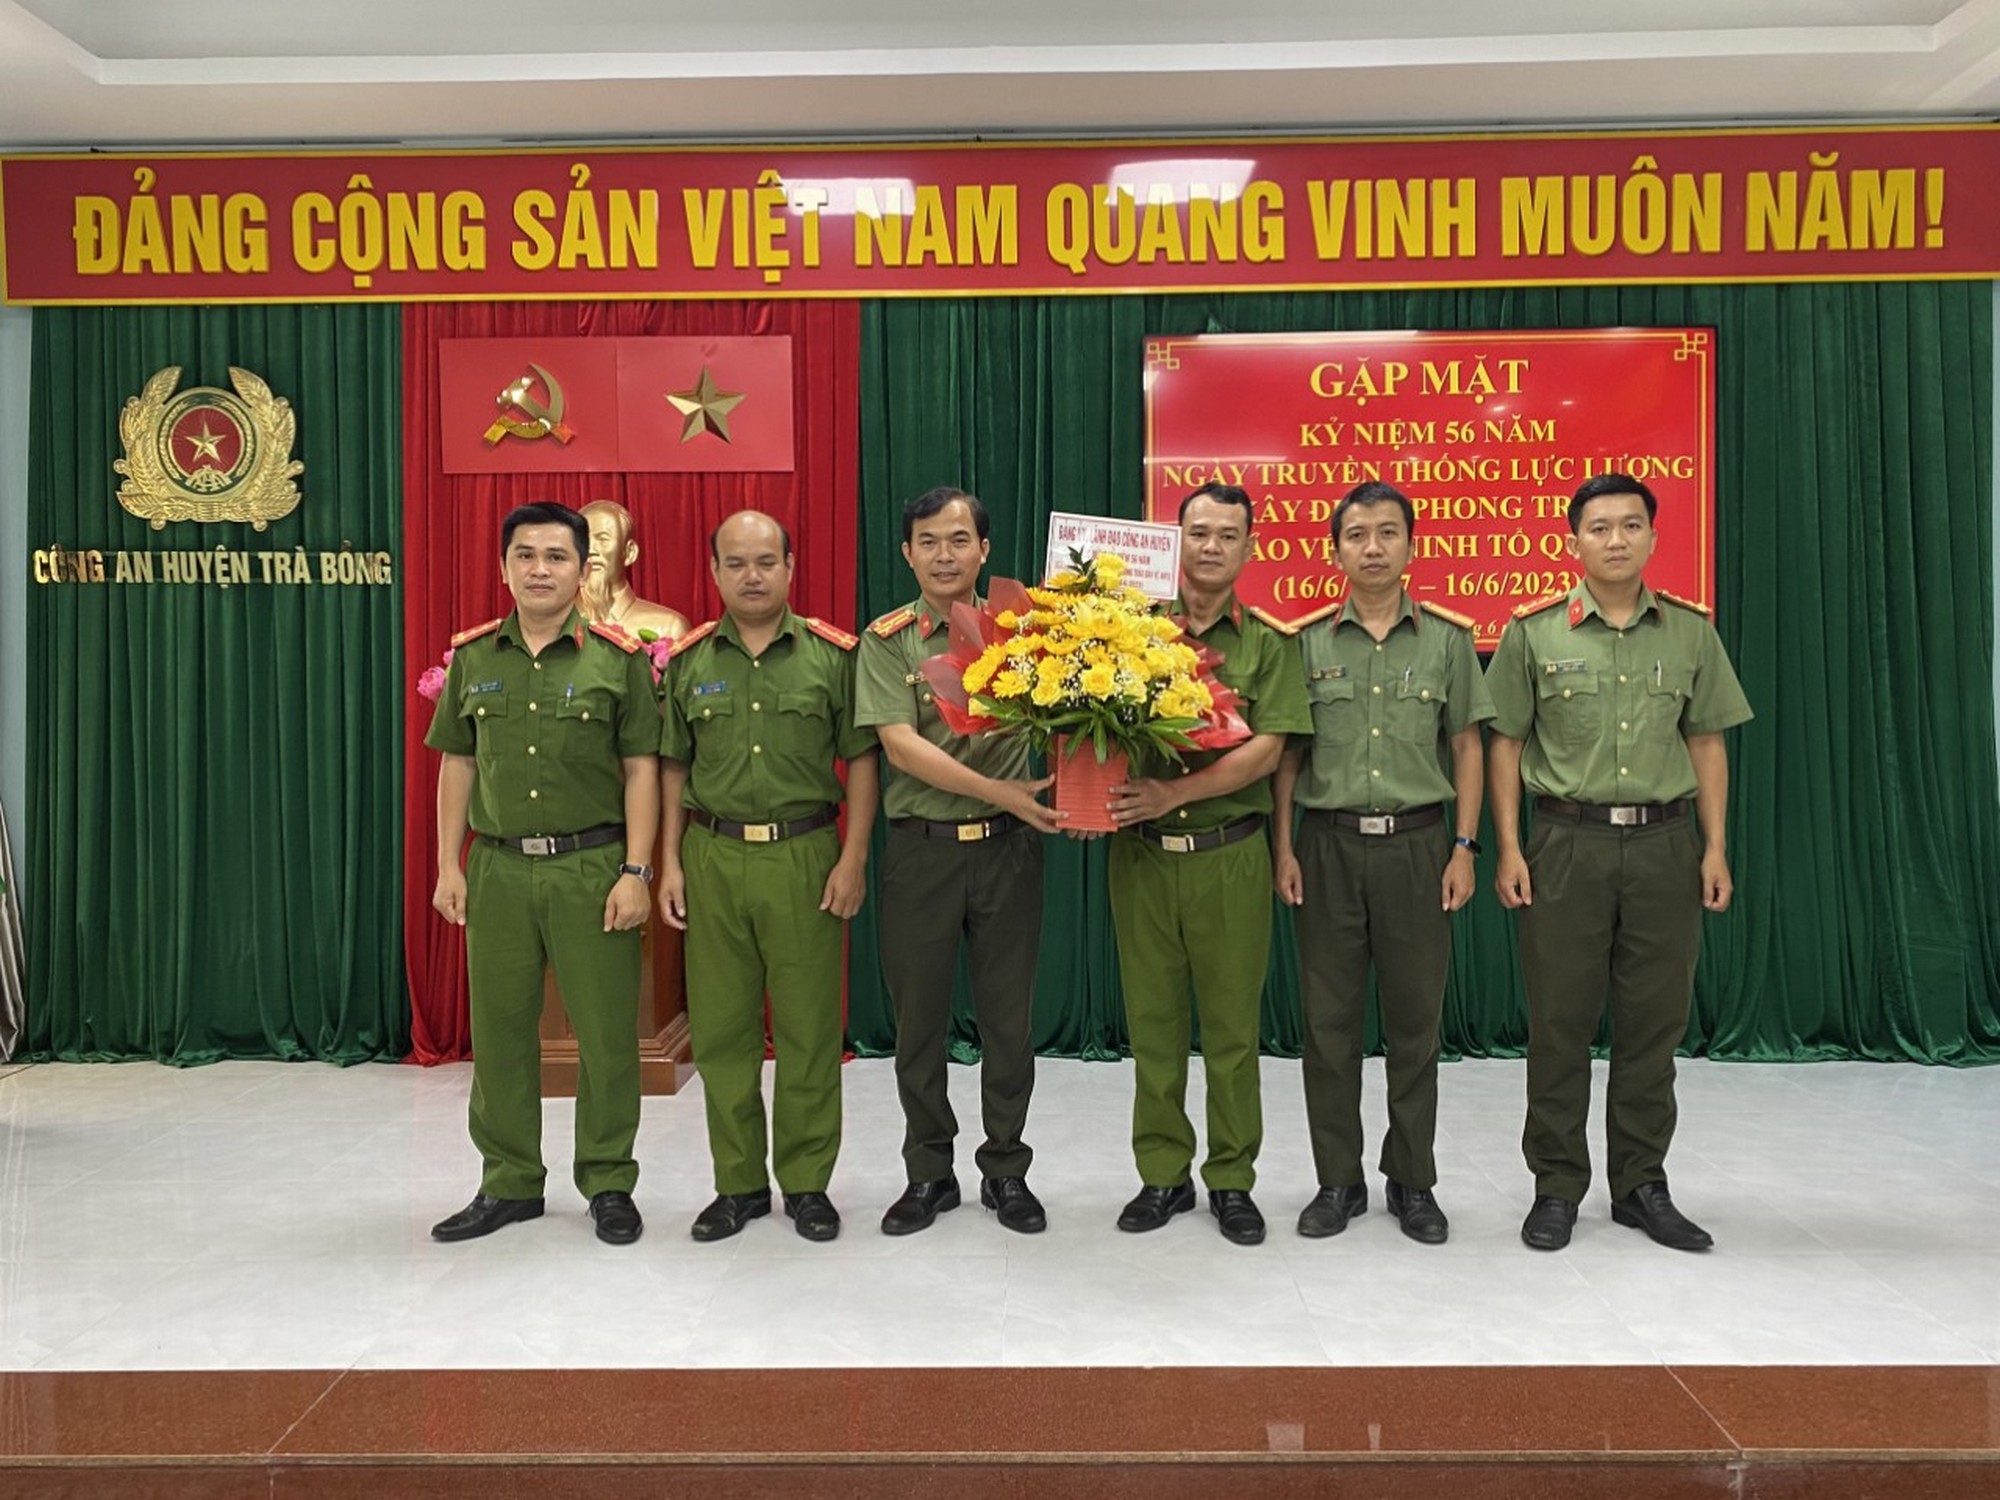 Công an huyện Trà Bổng tổ chức gặp mặt nhân Kỷ niệm 56 năm Ngày truyền thống lực lượng xây dựng phong trào bảo vệ an ninh Tổ quốc